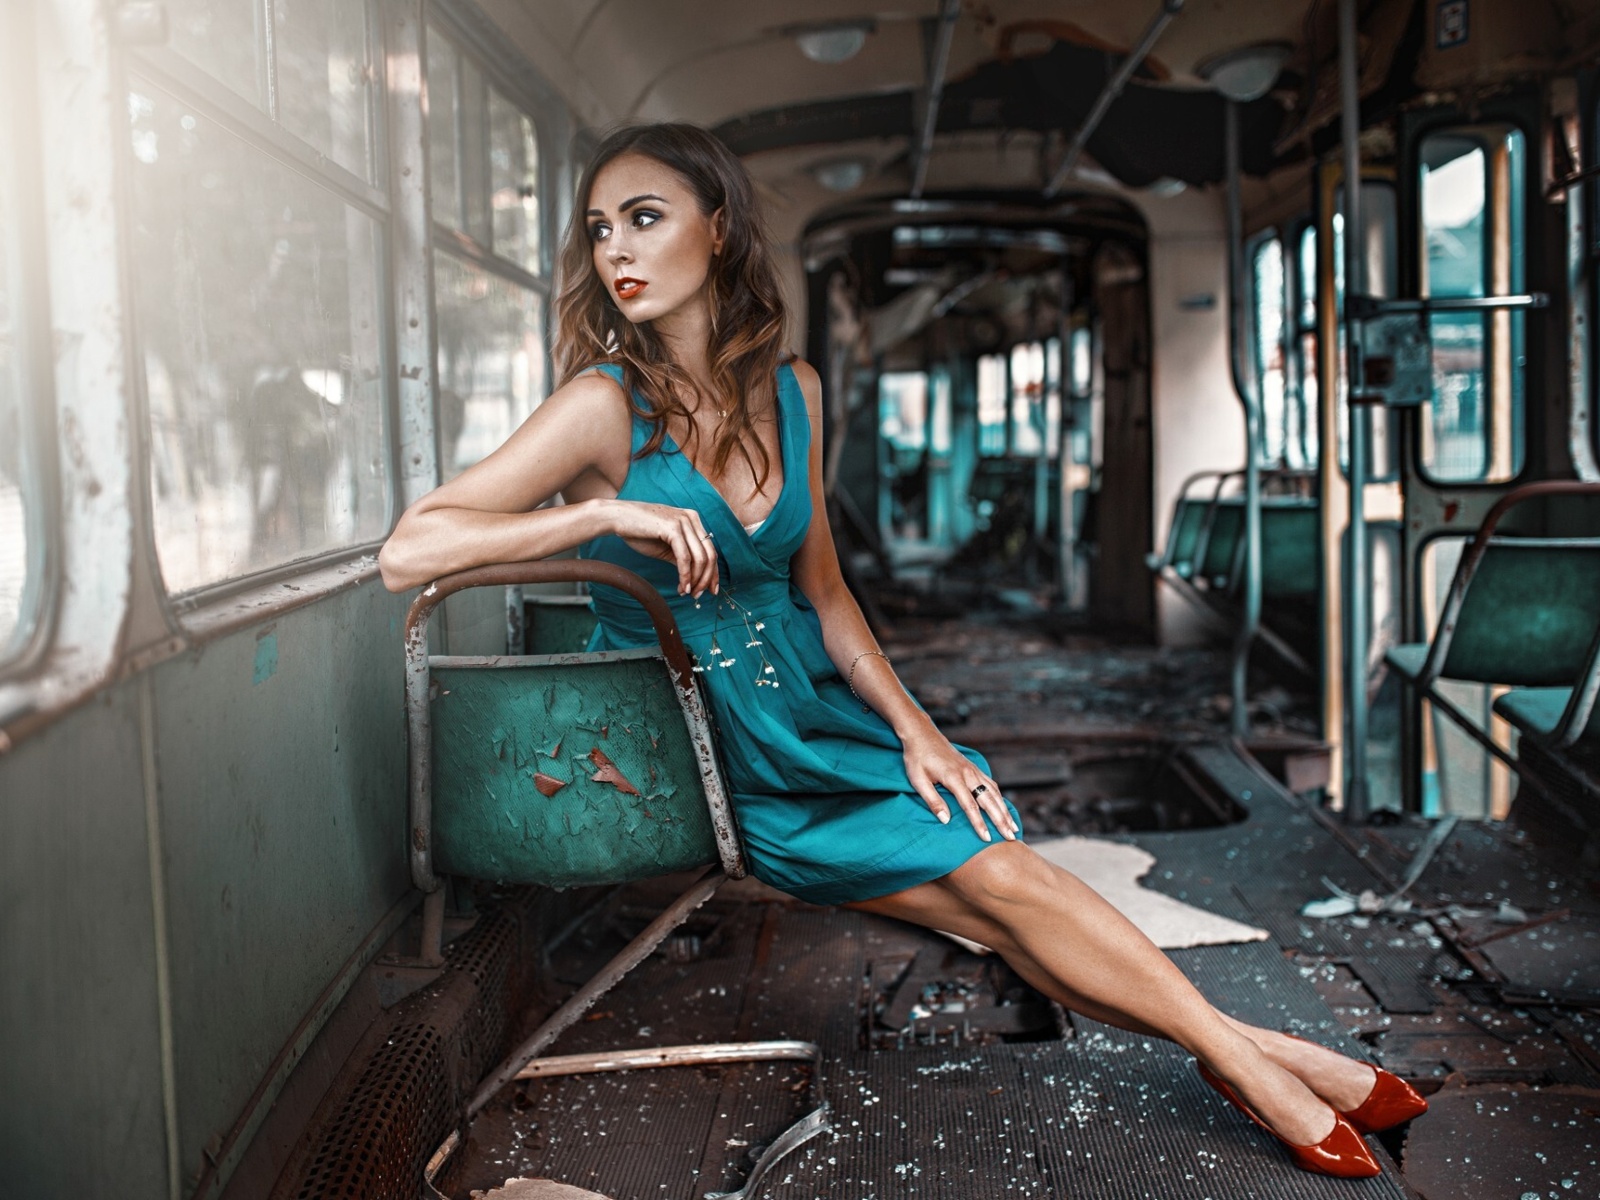 Обои Girl in abandoned train 1600x1200